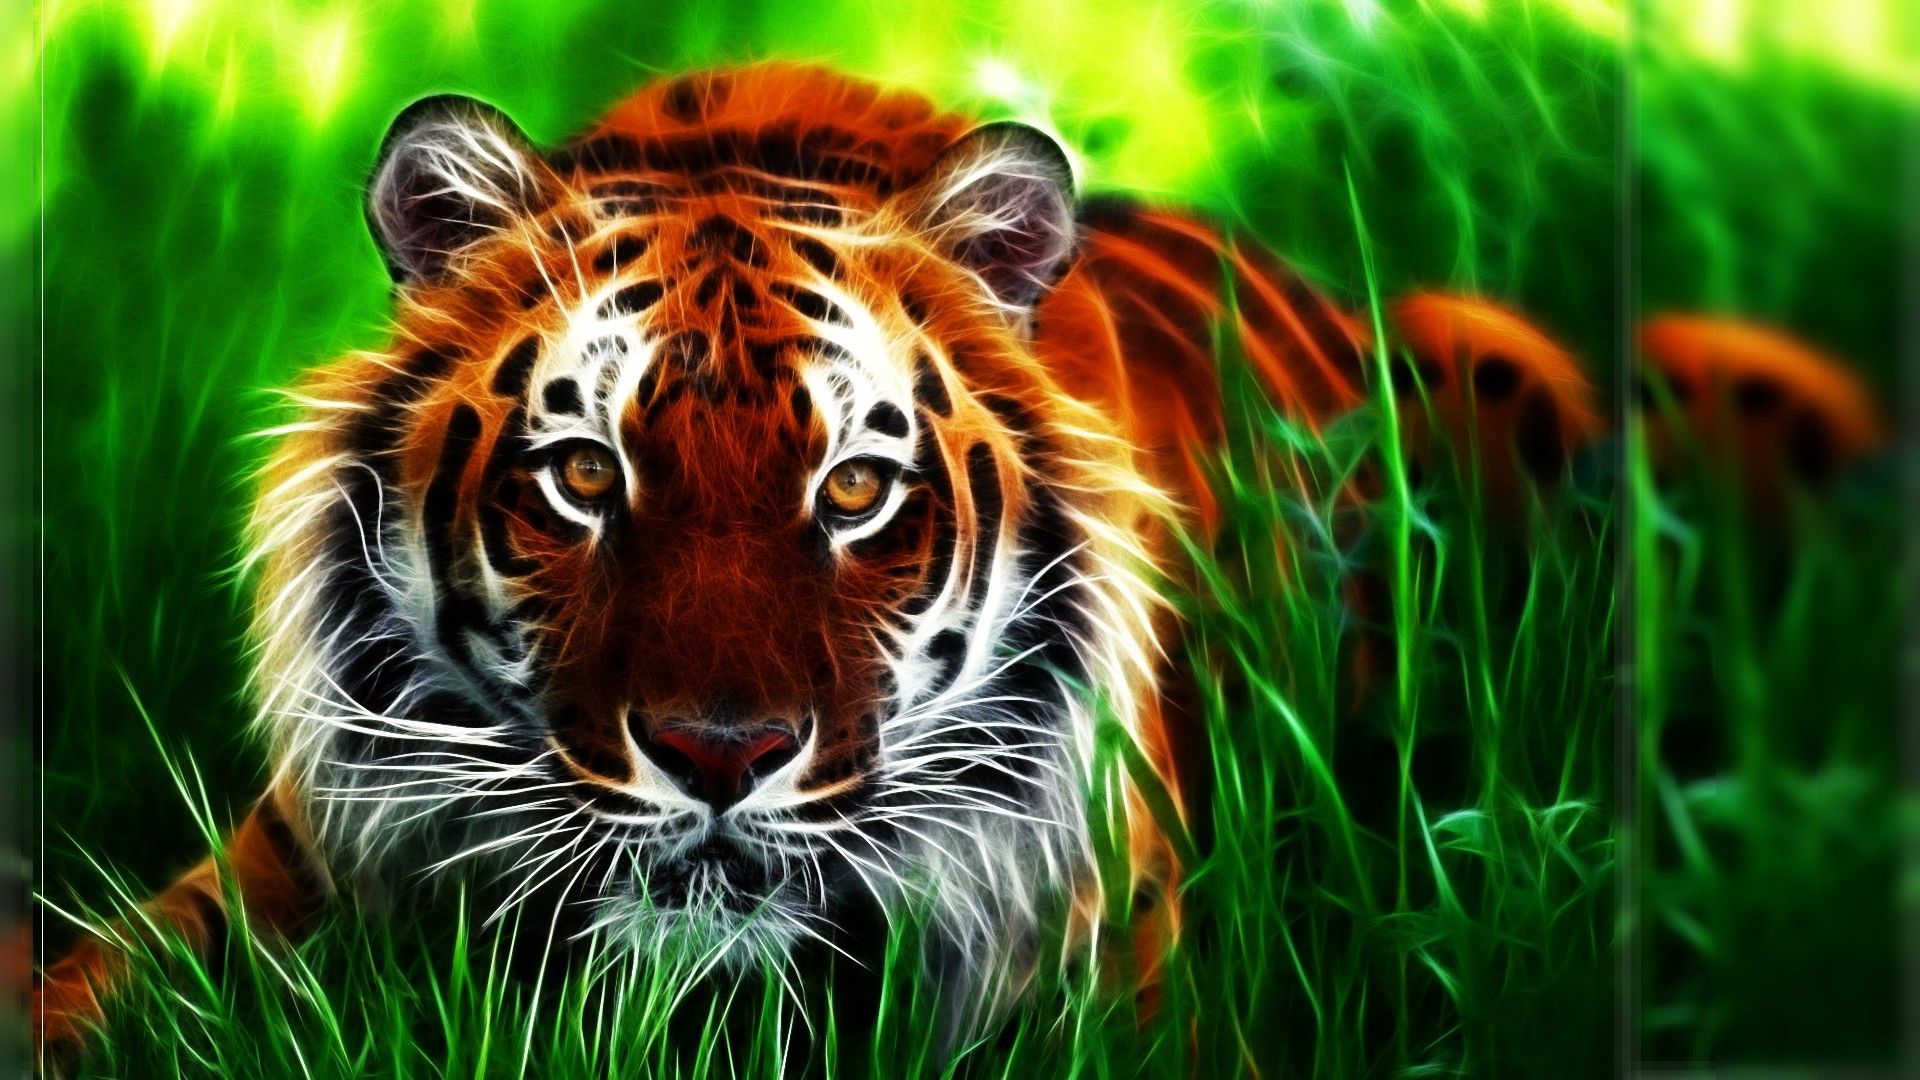 Tiger Photos Wallpapers